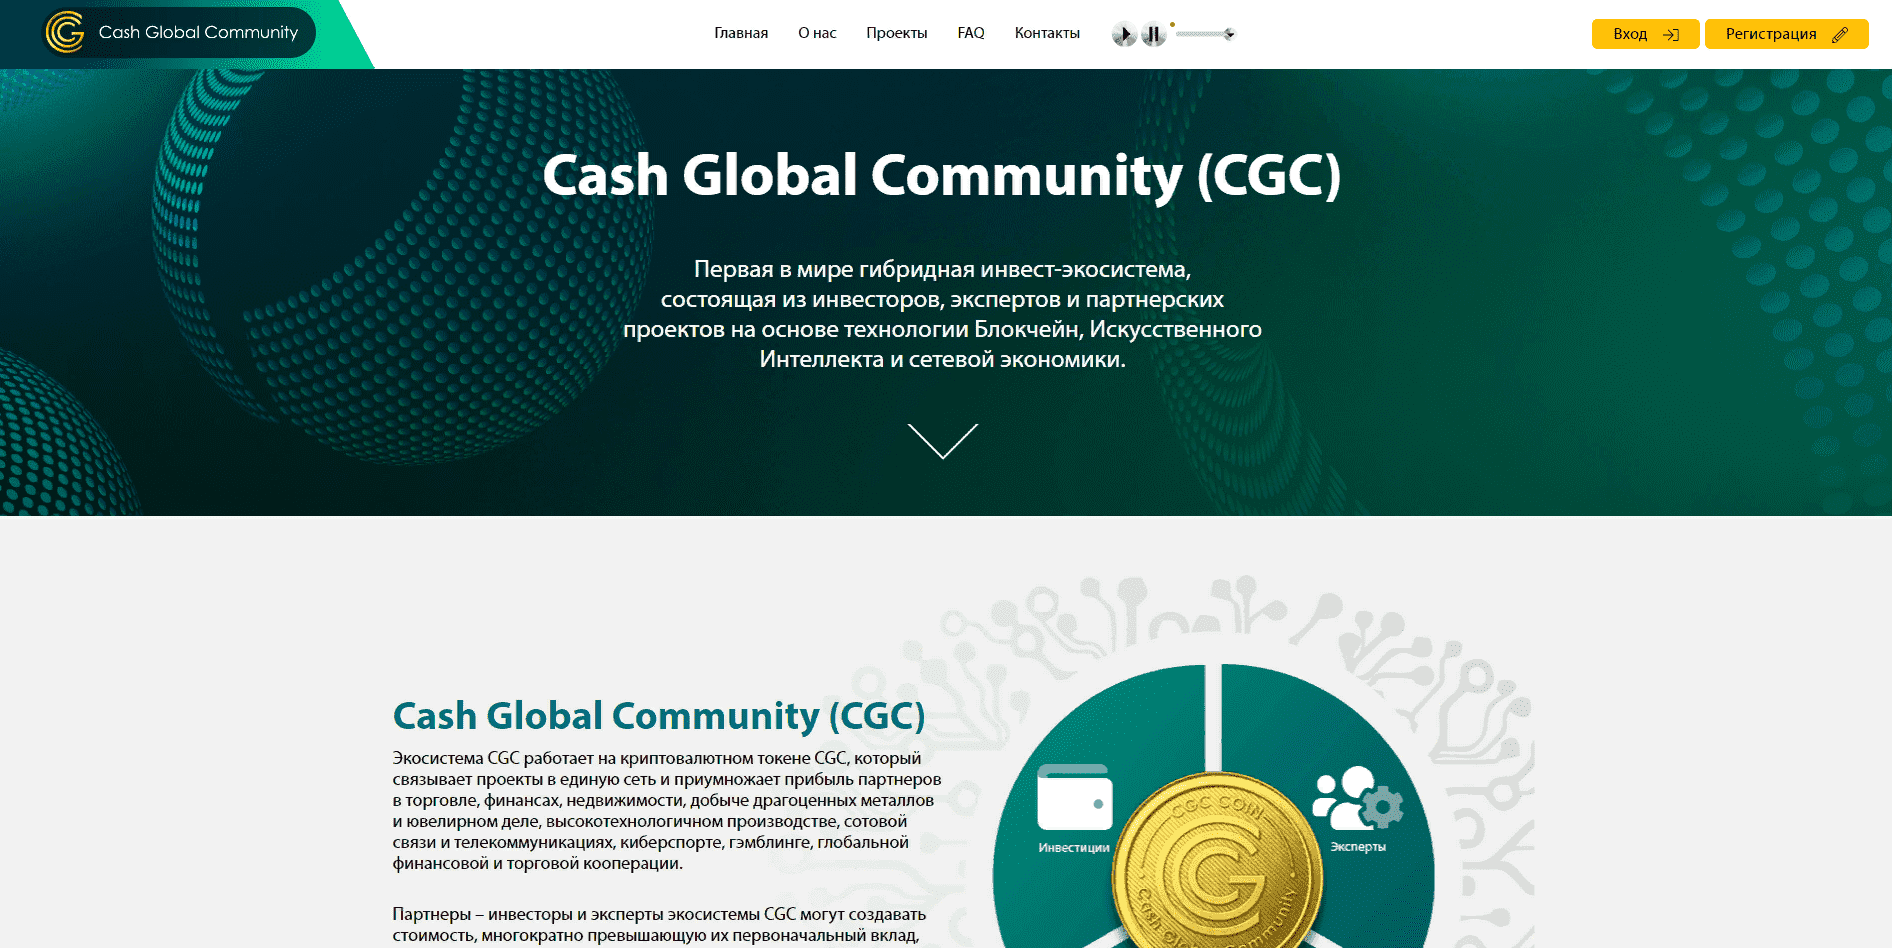 Cash Global Community